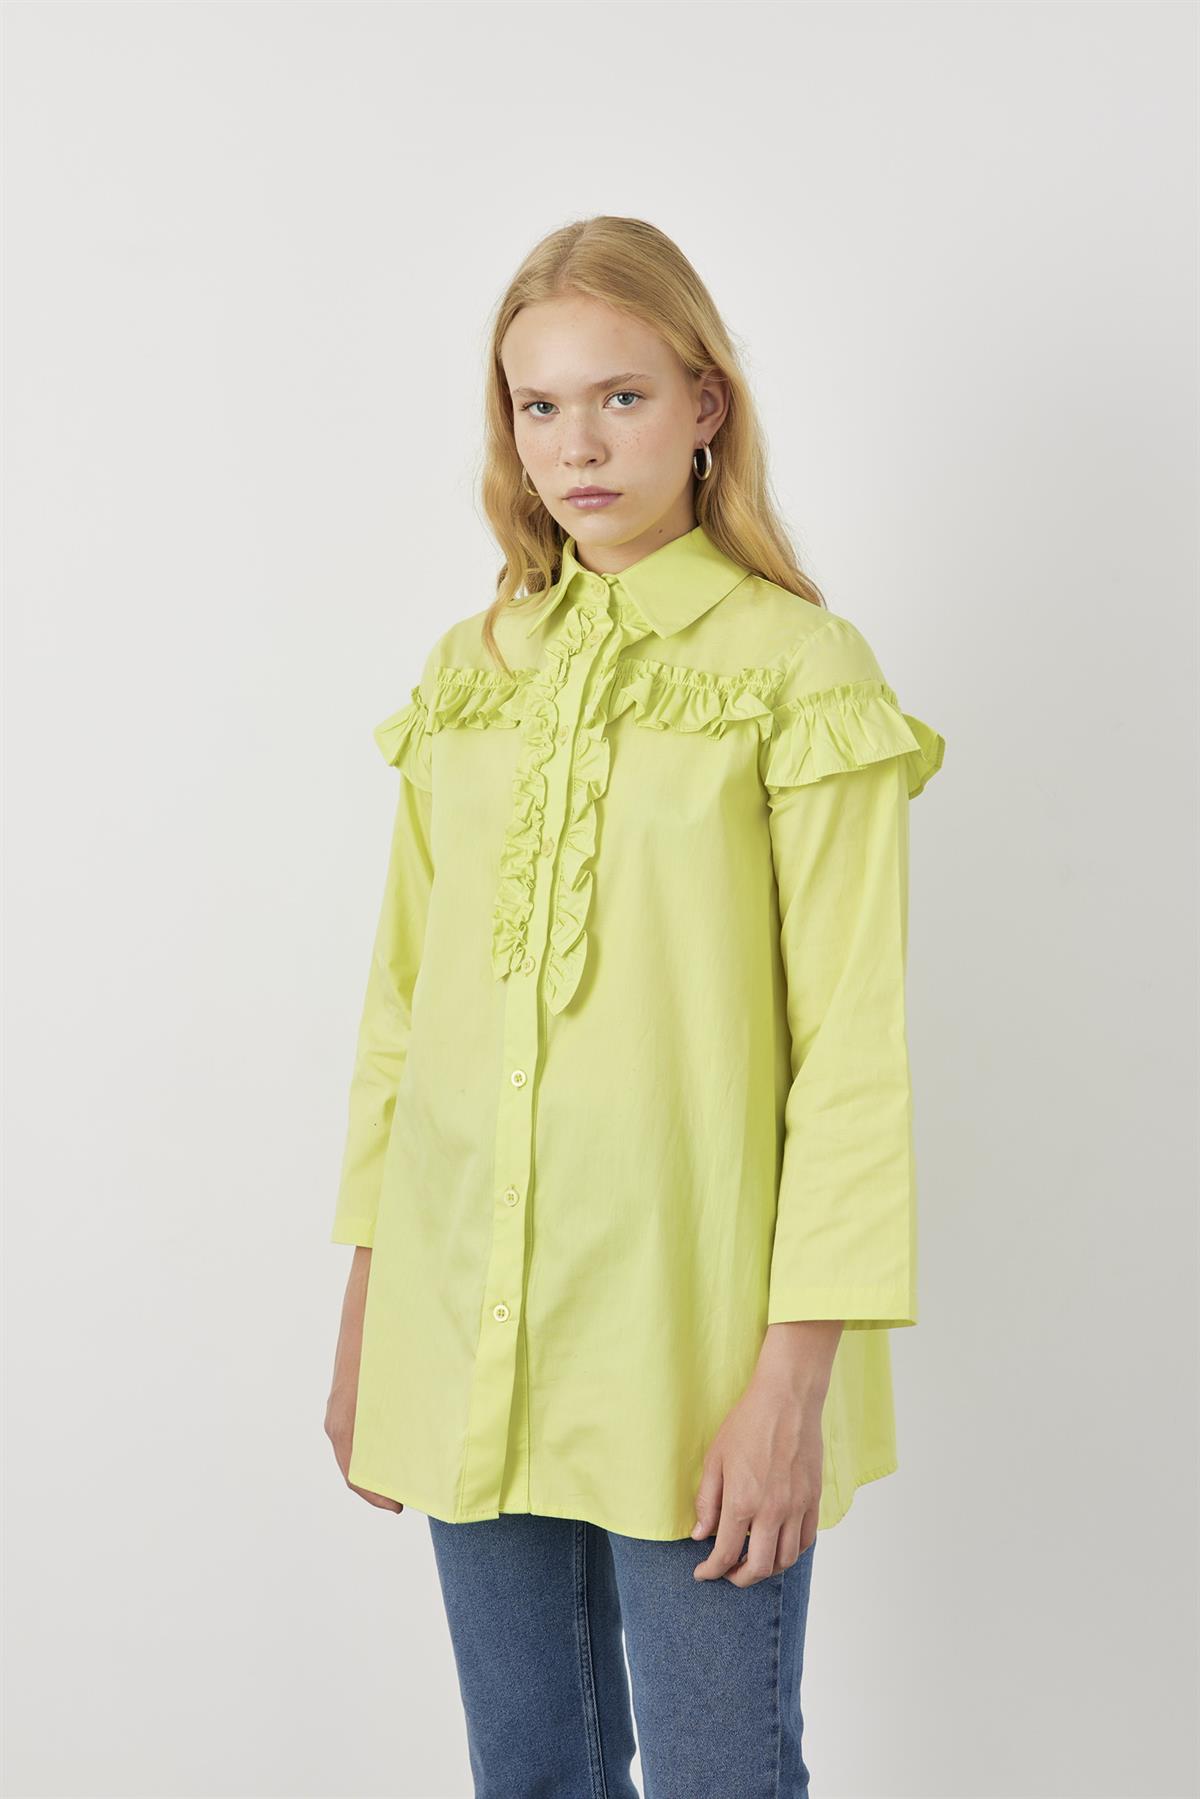 Farbalalı Geniş Kollu Kadın Gömlek Açık Yeşil - FAHHAR